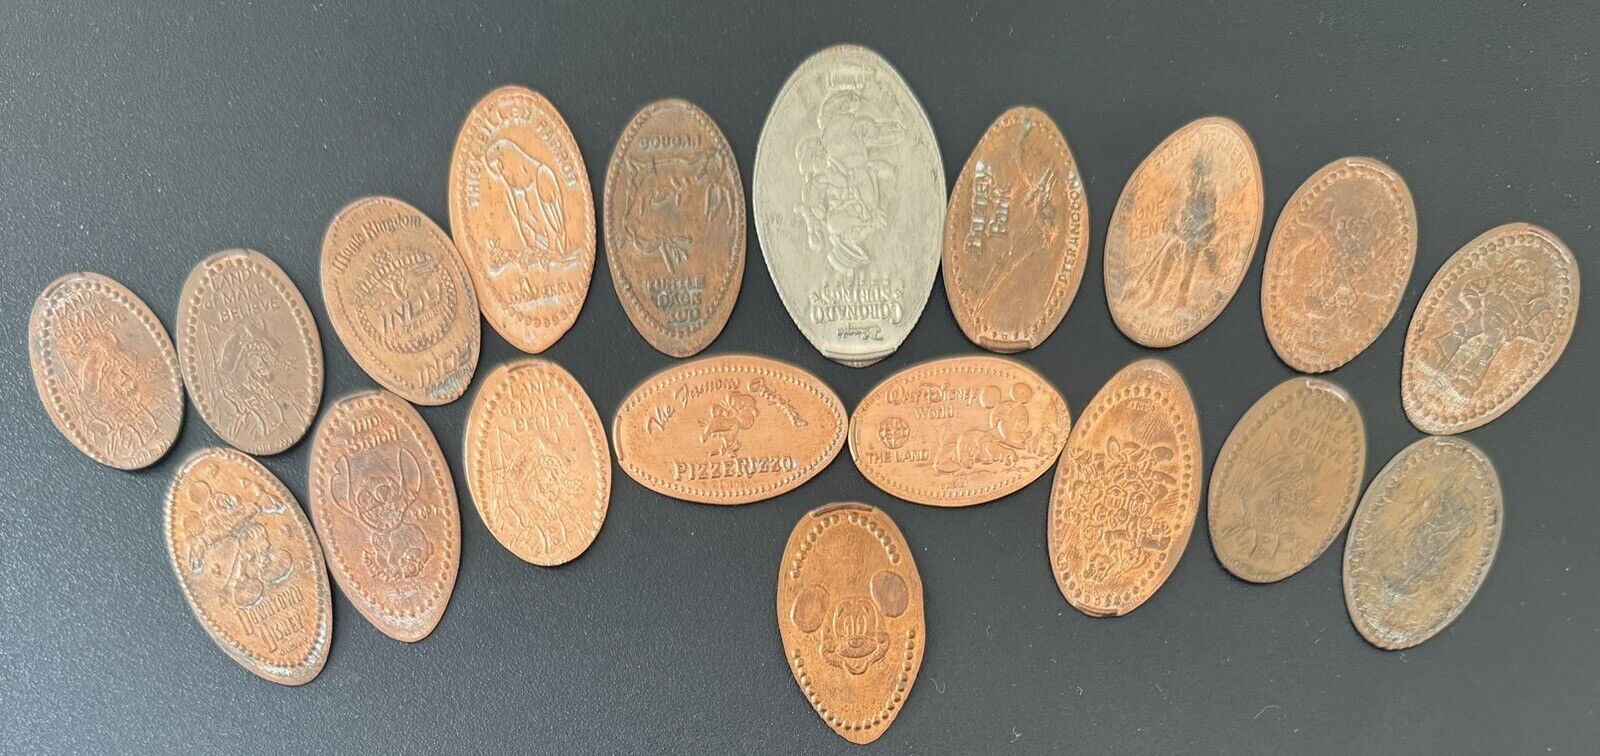 Disney Coin Collection